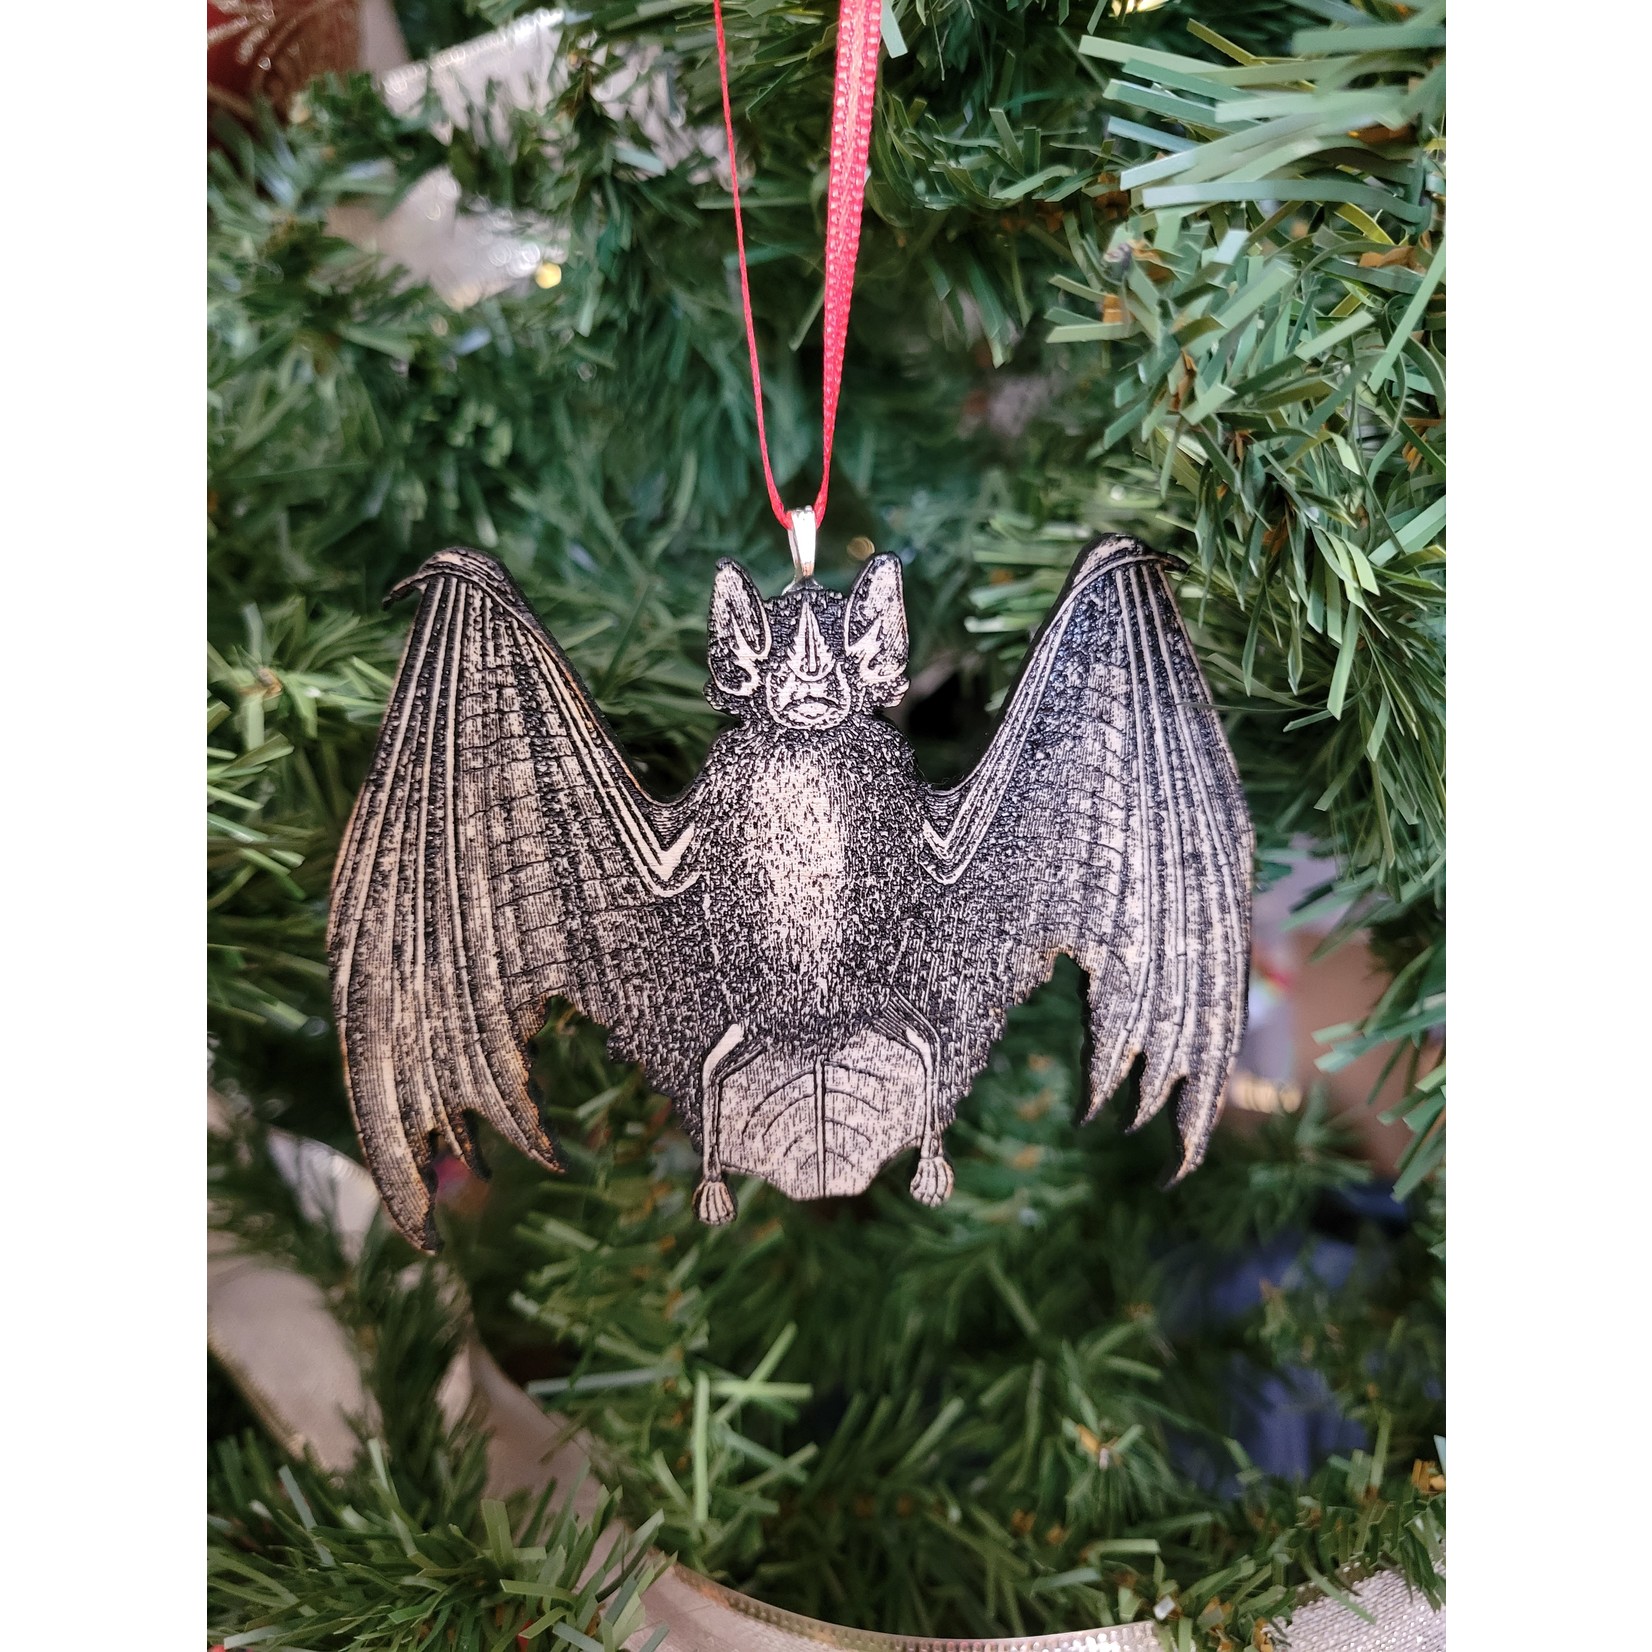 Bat Ornament- Wood